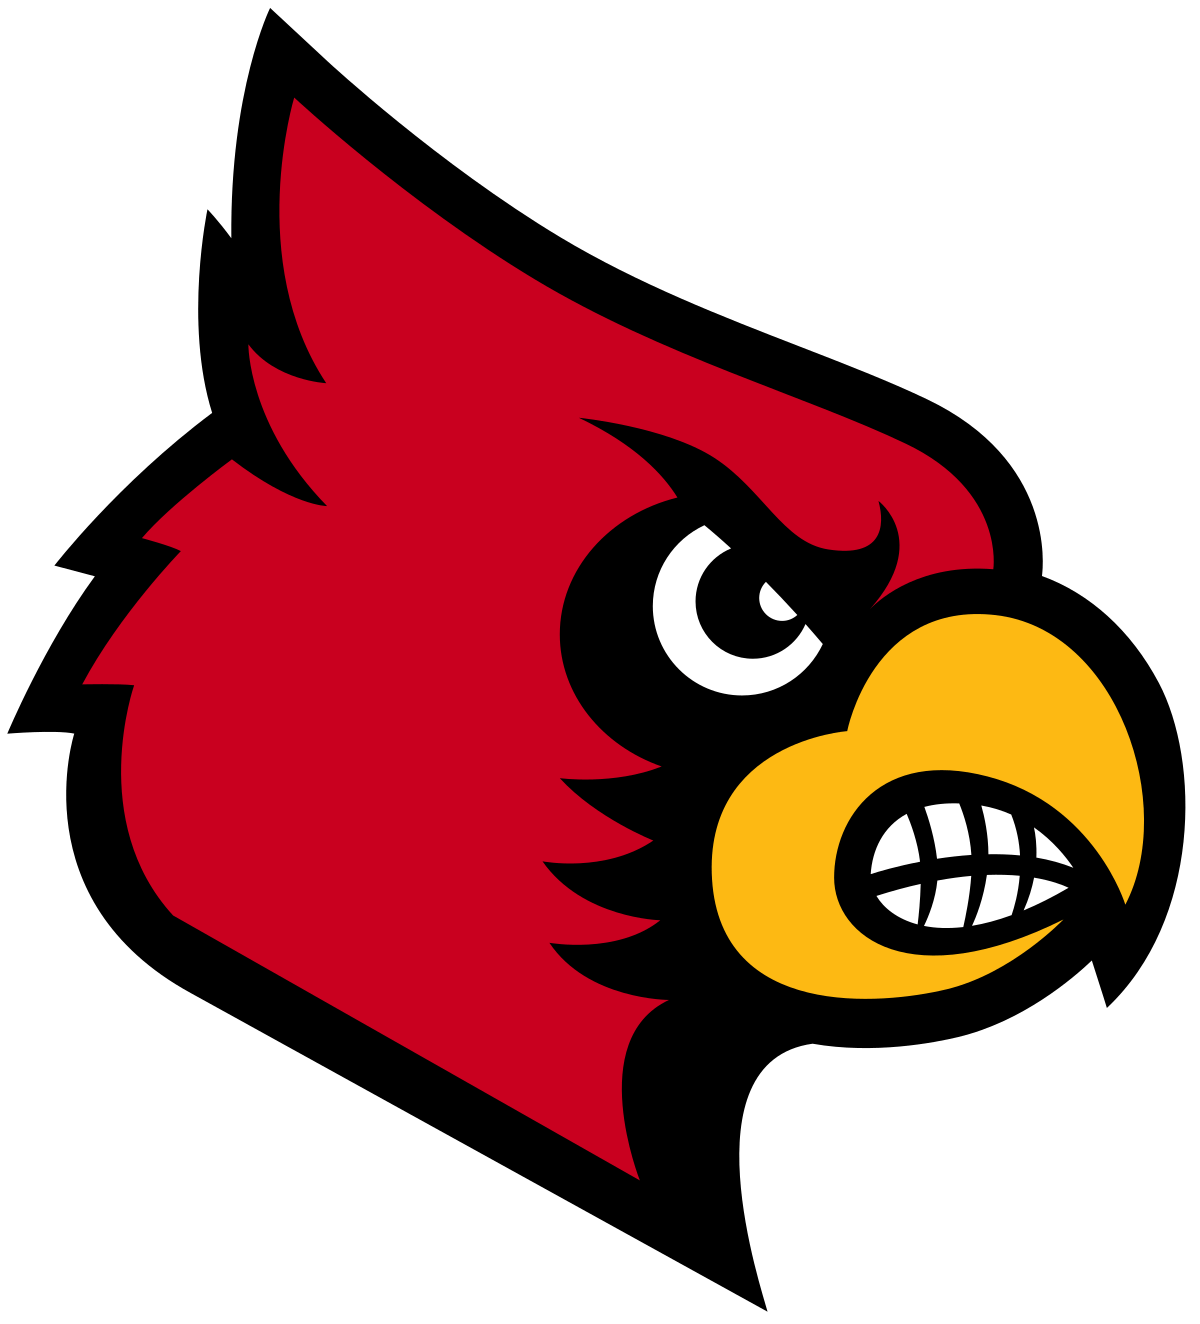 U of L Basketball Logo - Louisville Cardinals